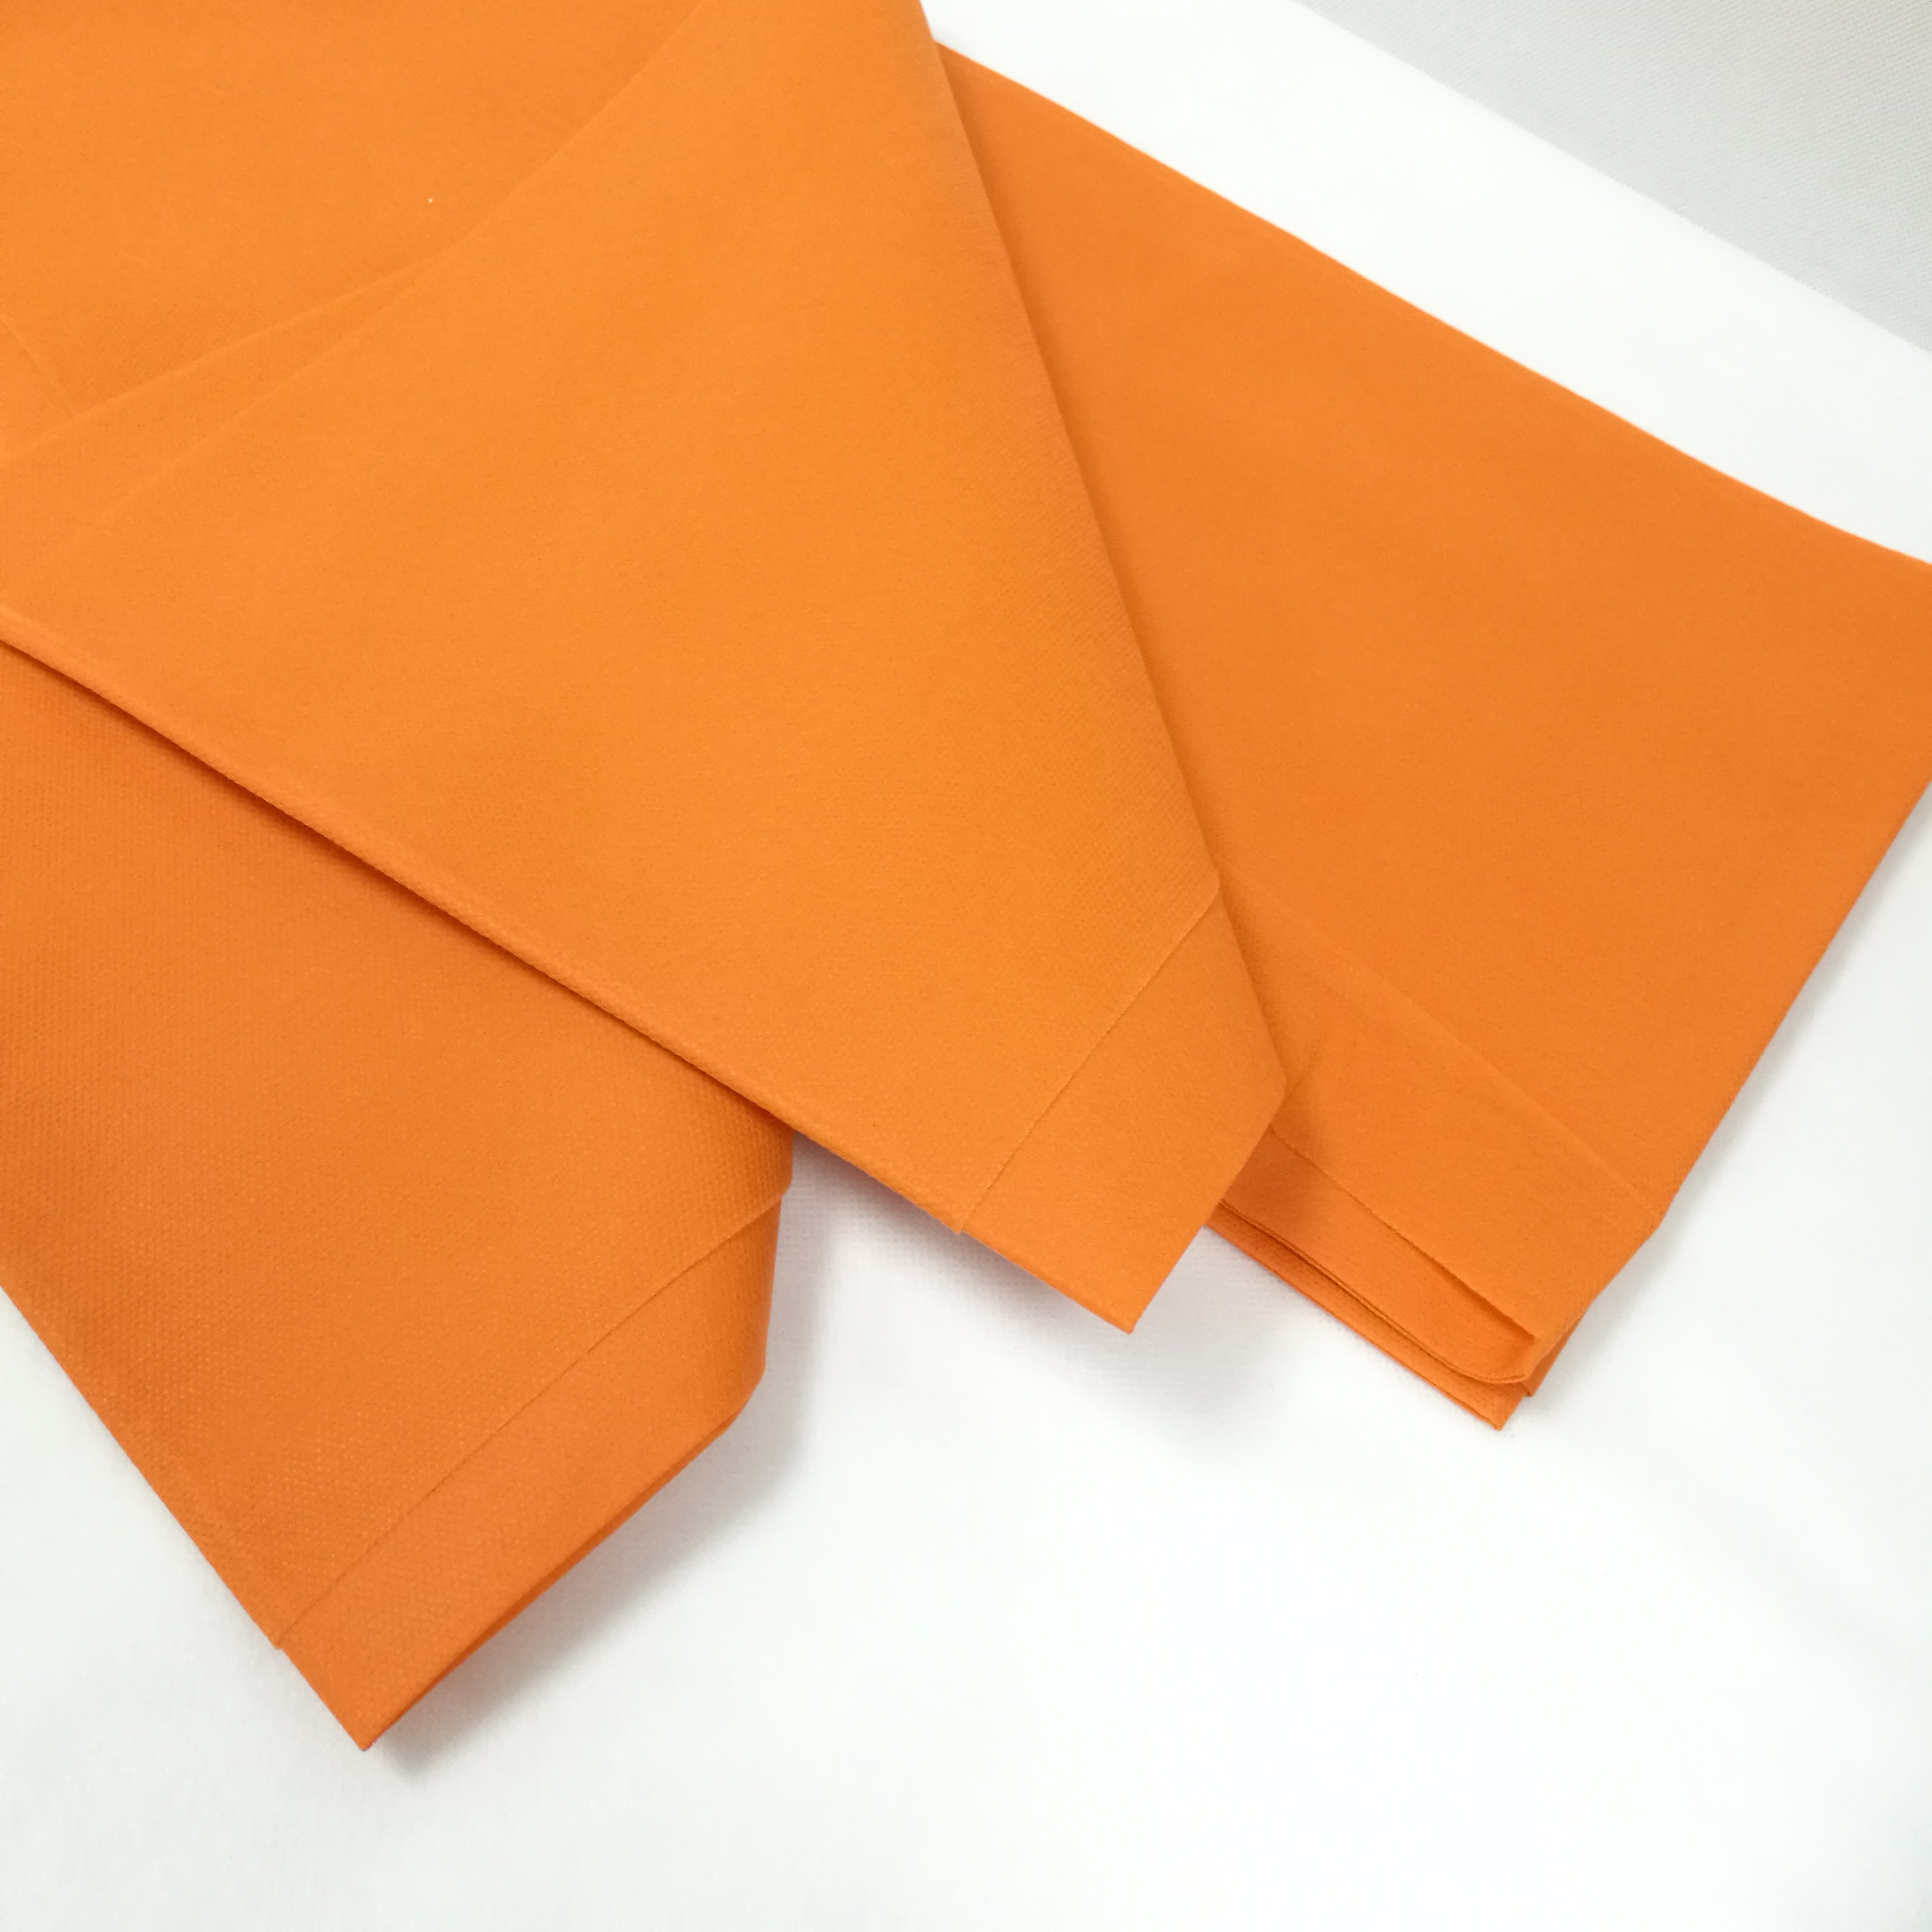 无纺布桌布 100% 聚丙烯纺粘每切桌布